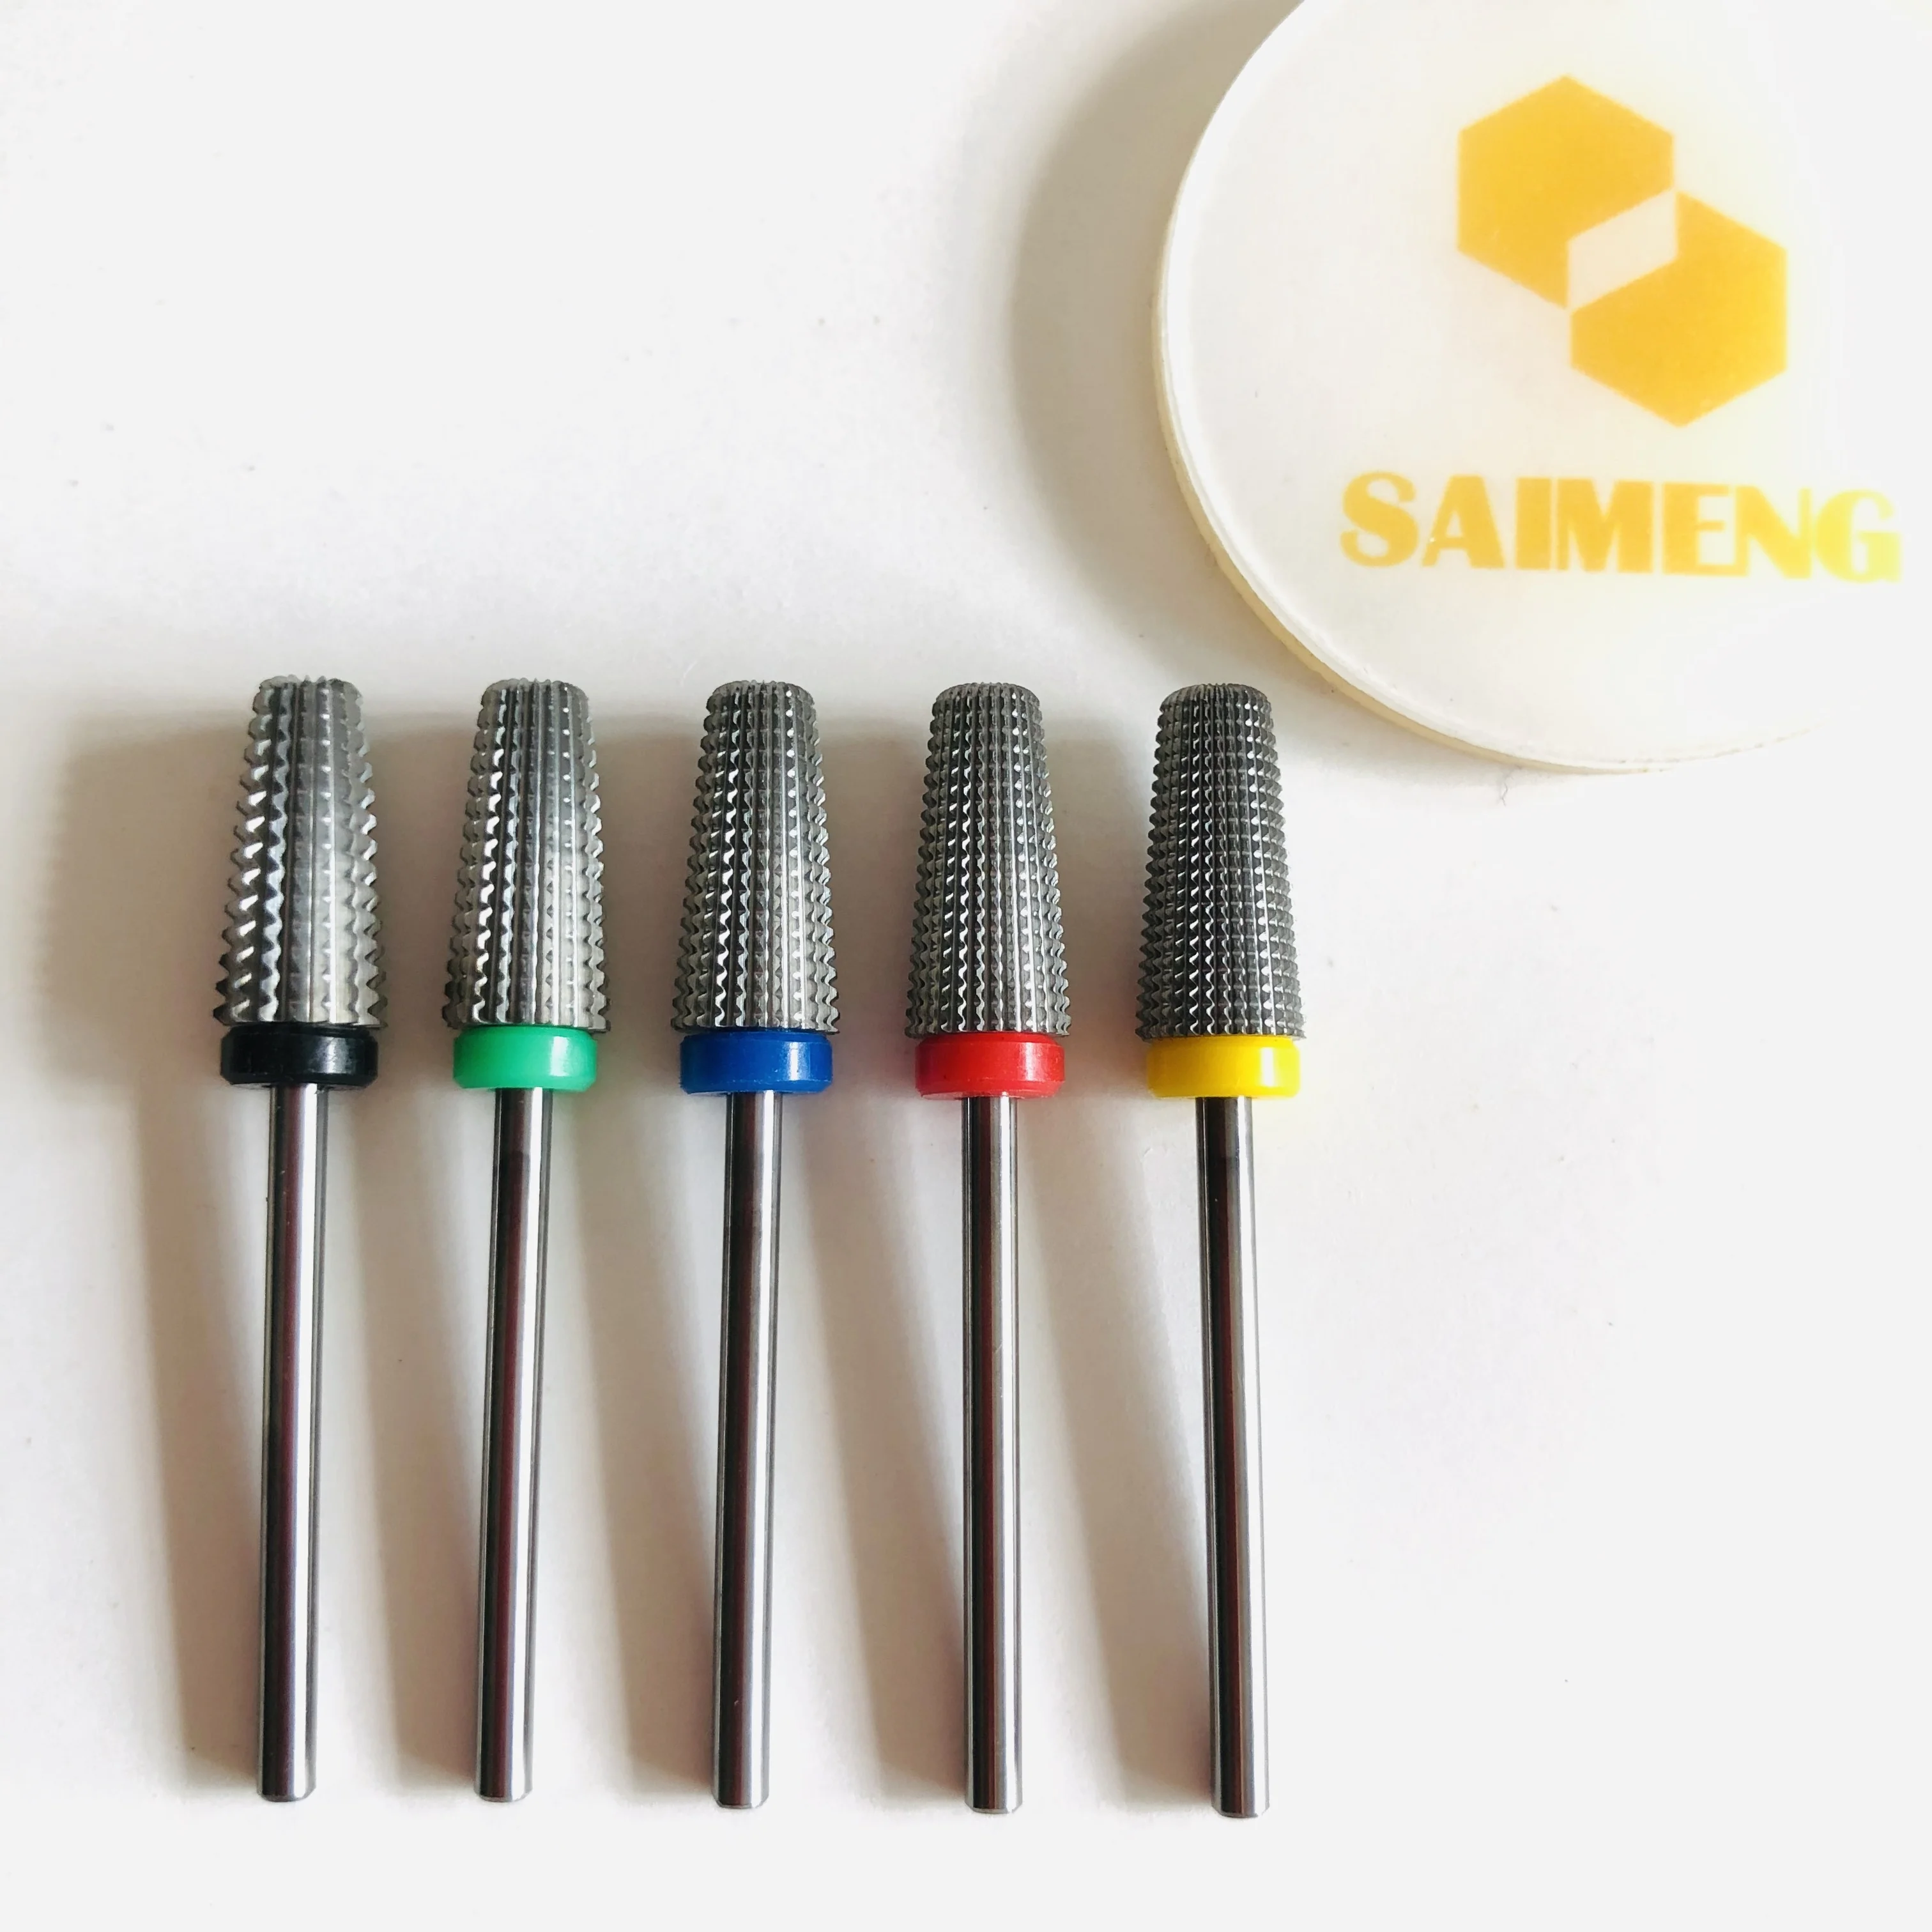 5 in 1 E-files bits carbide nail drill bits